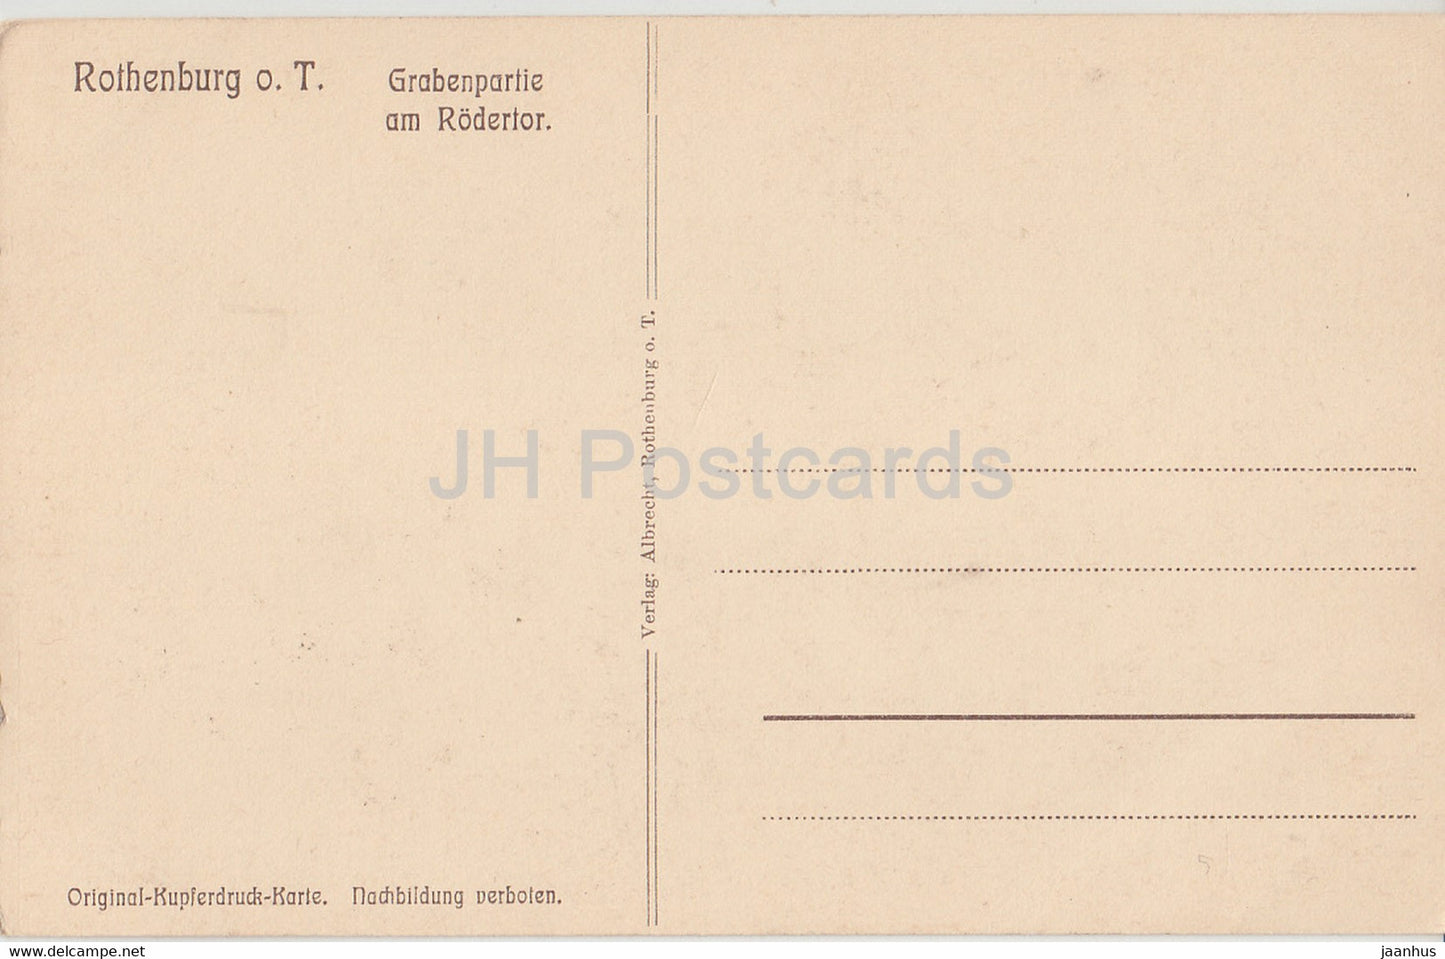 Rothenburg od Tauber - Grabenpartie am Rodertor - alte Postkarte - Deutschland - unbenutzt